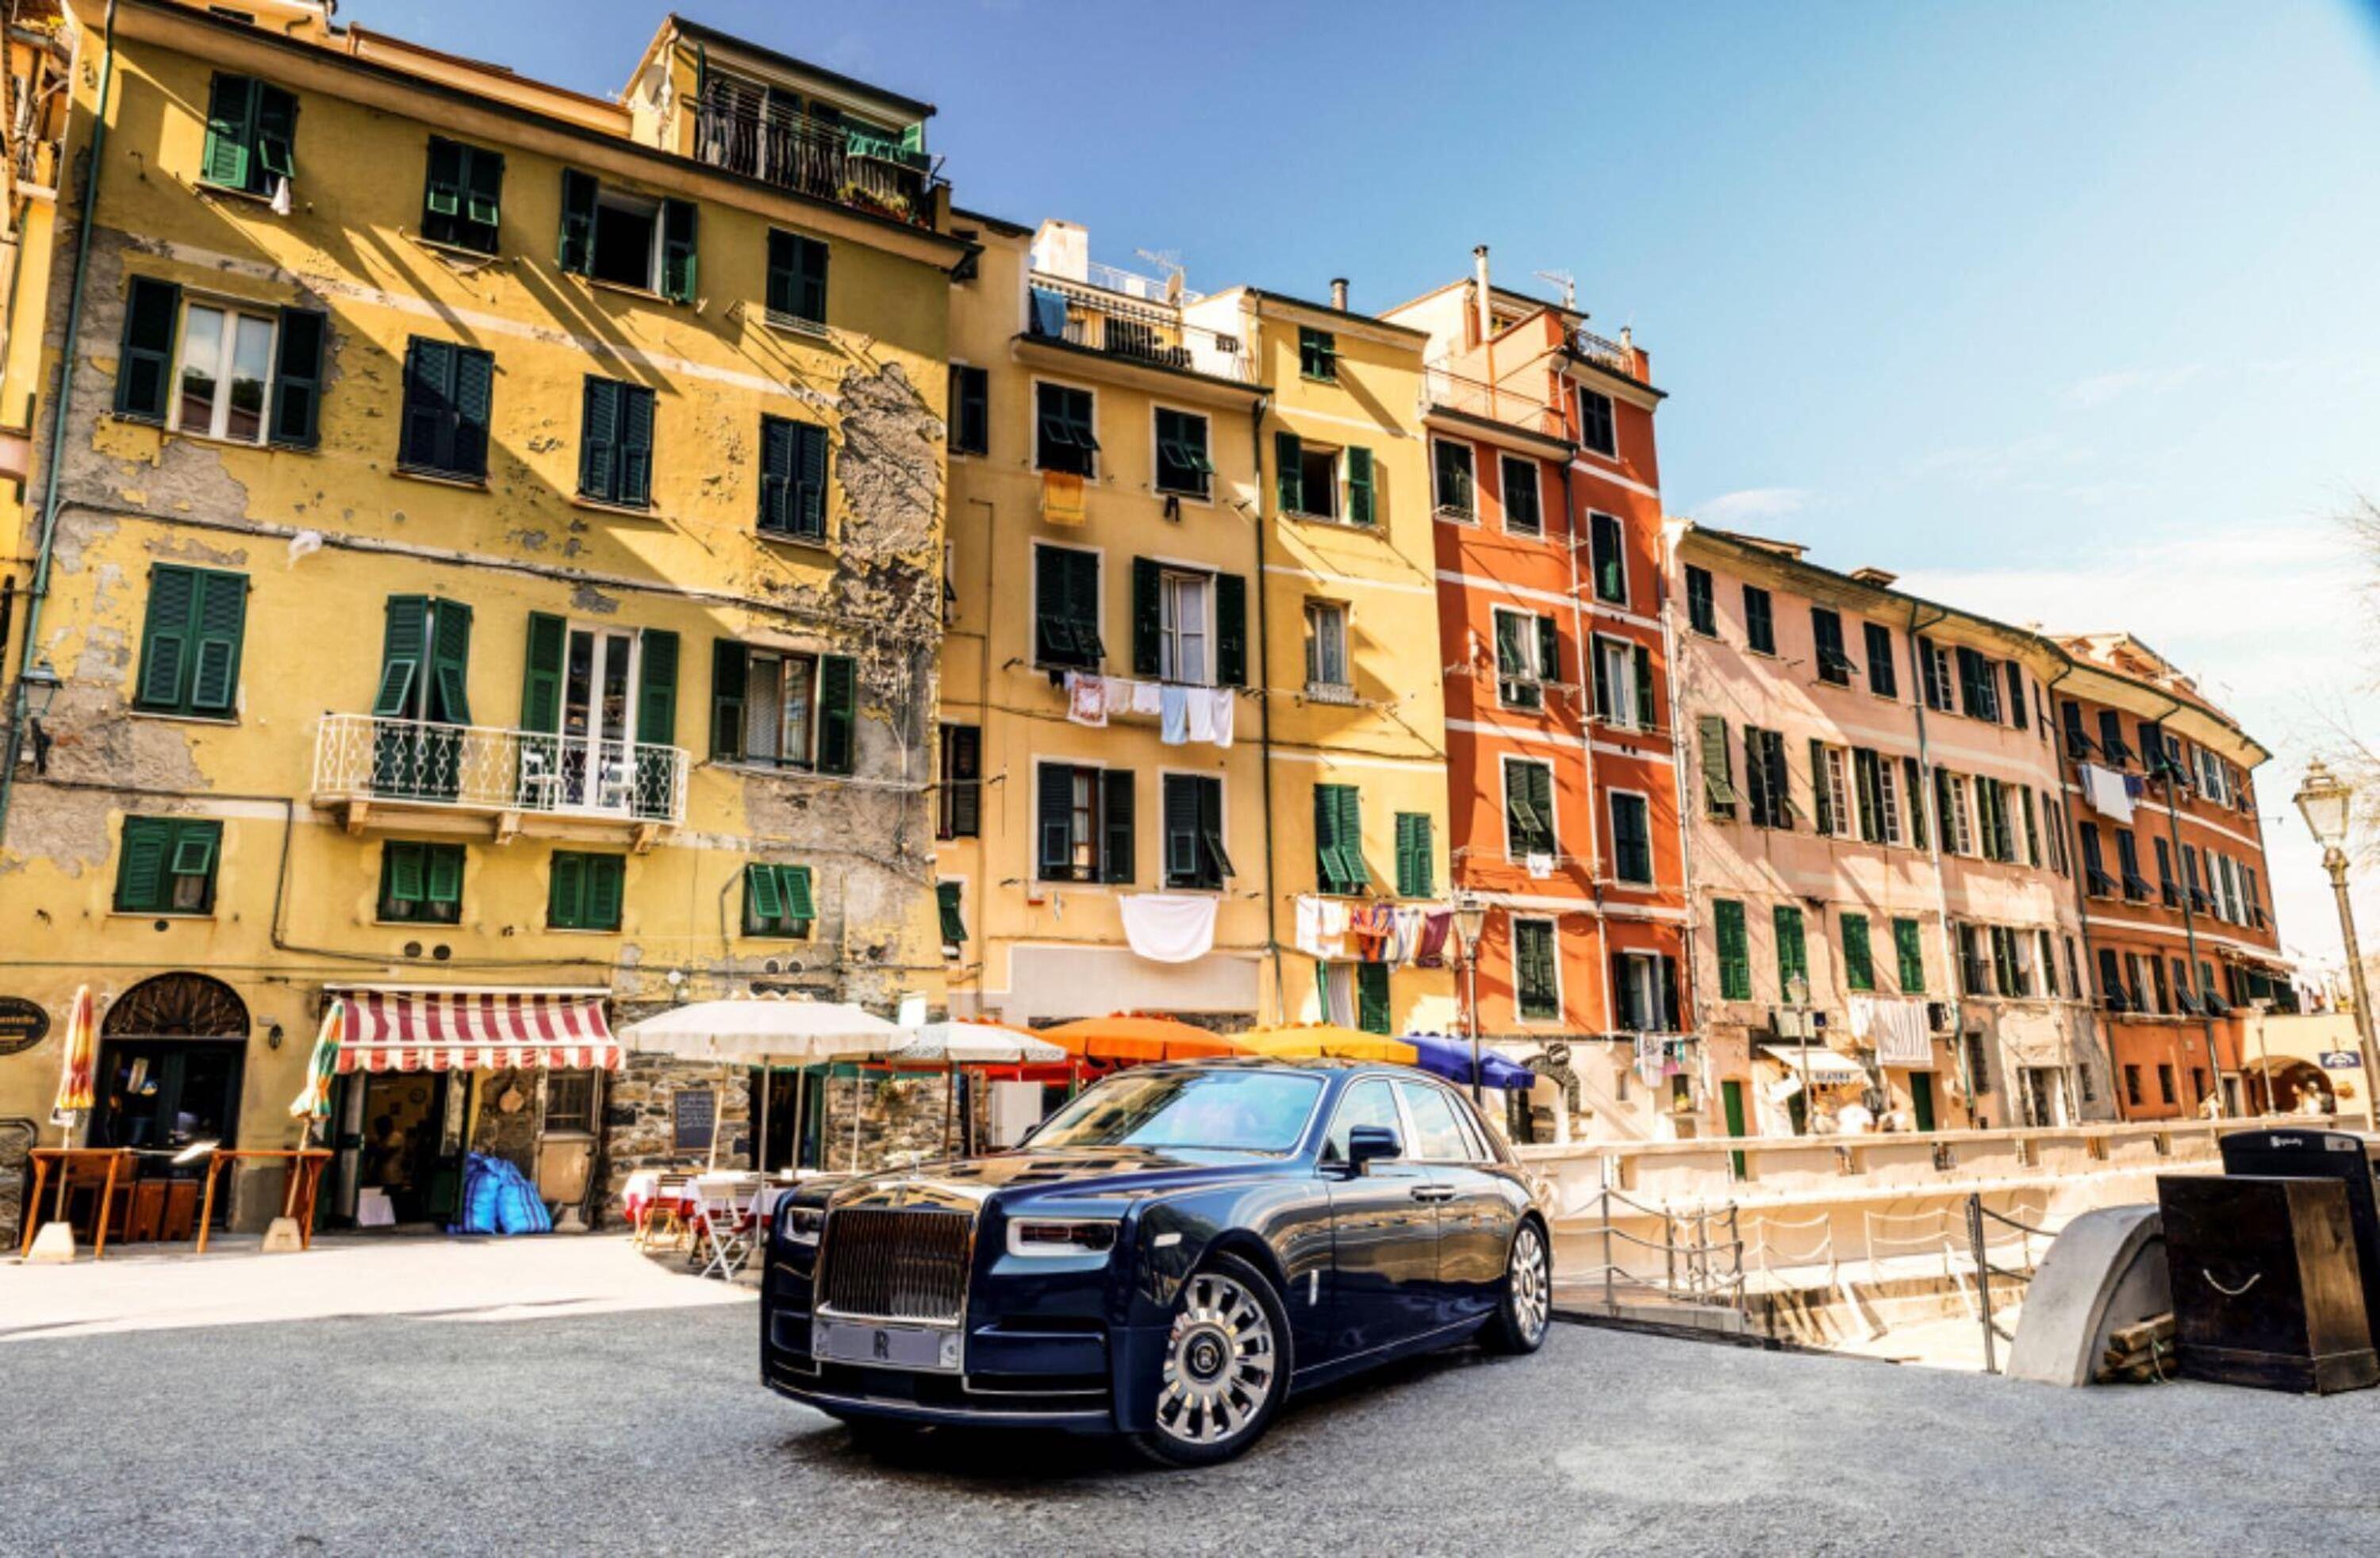 La Rolls Royce dedicata alla Cinque Terre: esemplare unico con galleria 